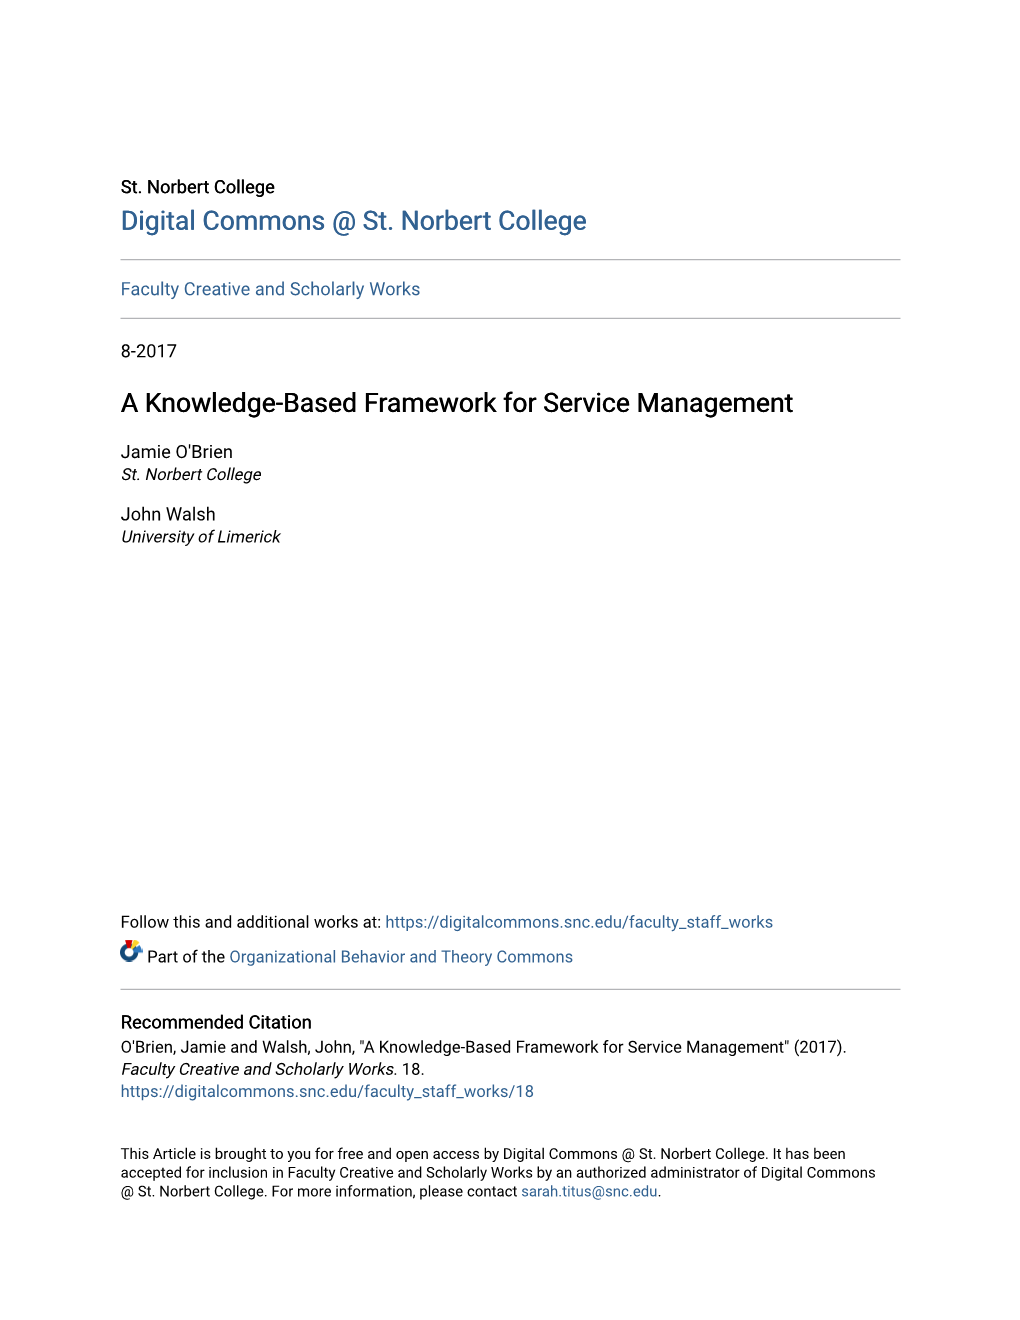 A Knowledge-Based Framework for Service Management